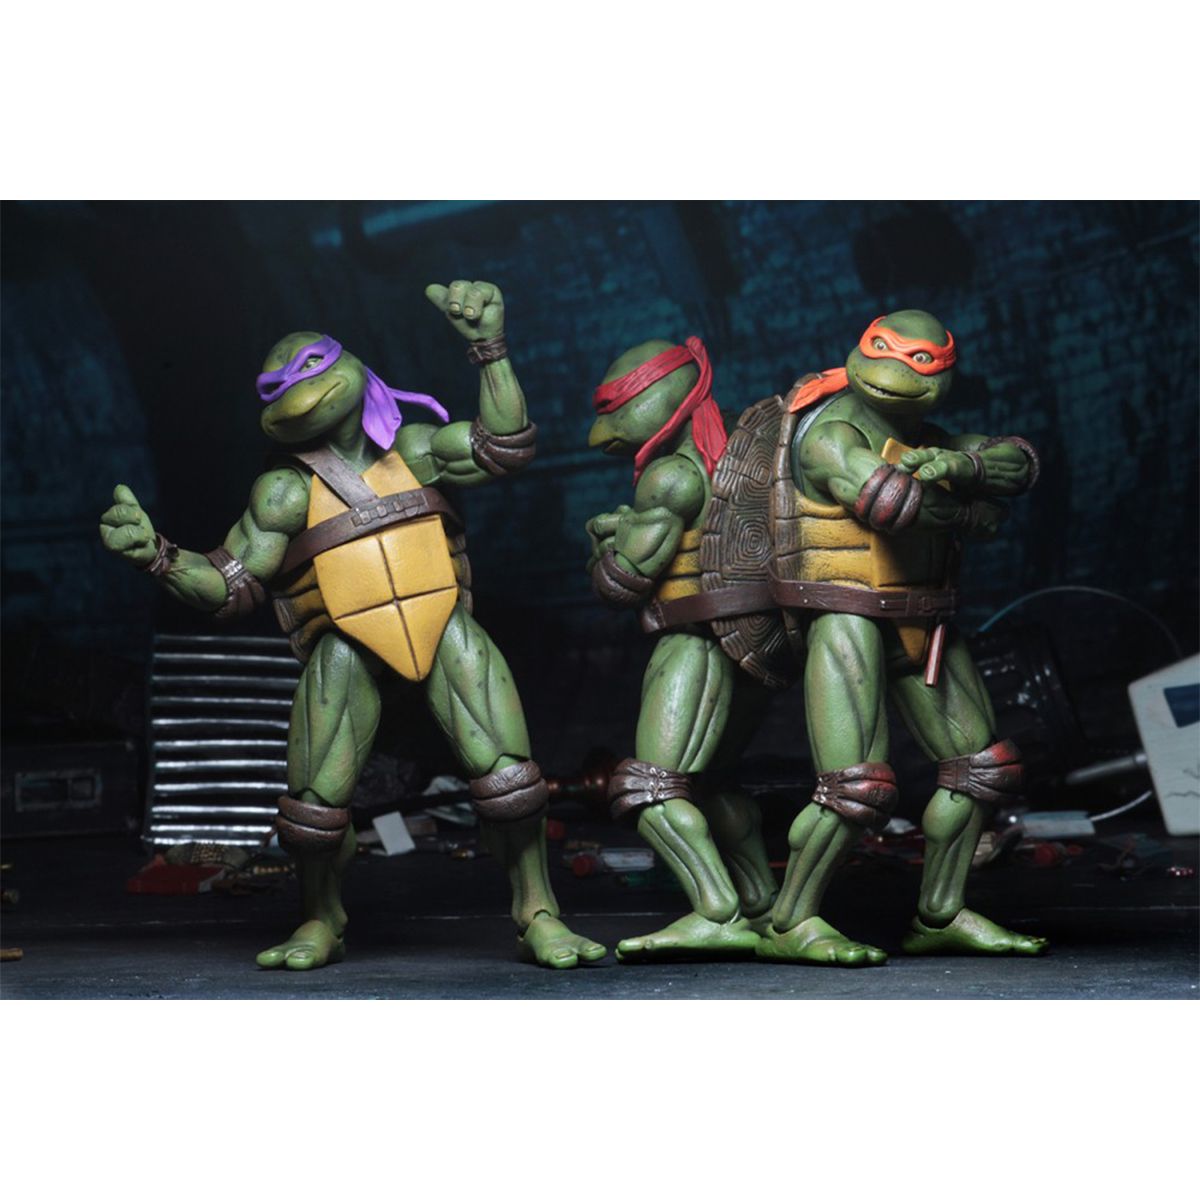 اکشن فیگور نکا مدل لاکپشت های نینجا طرح Turtle Ninja مجموعه 4 عددی -  - 15